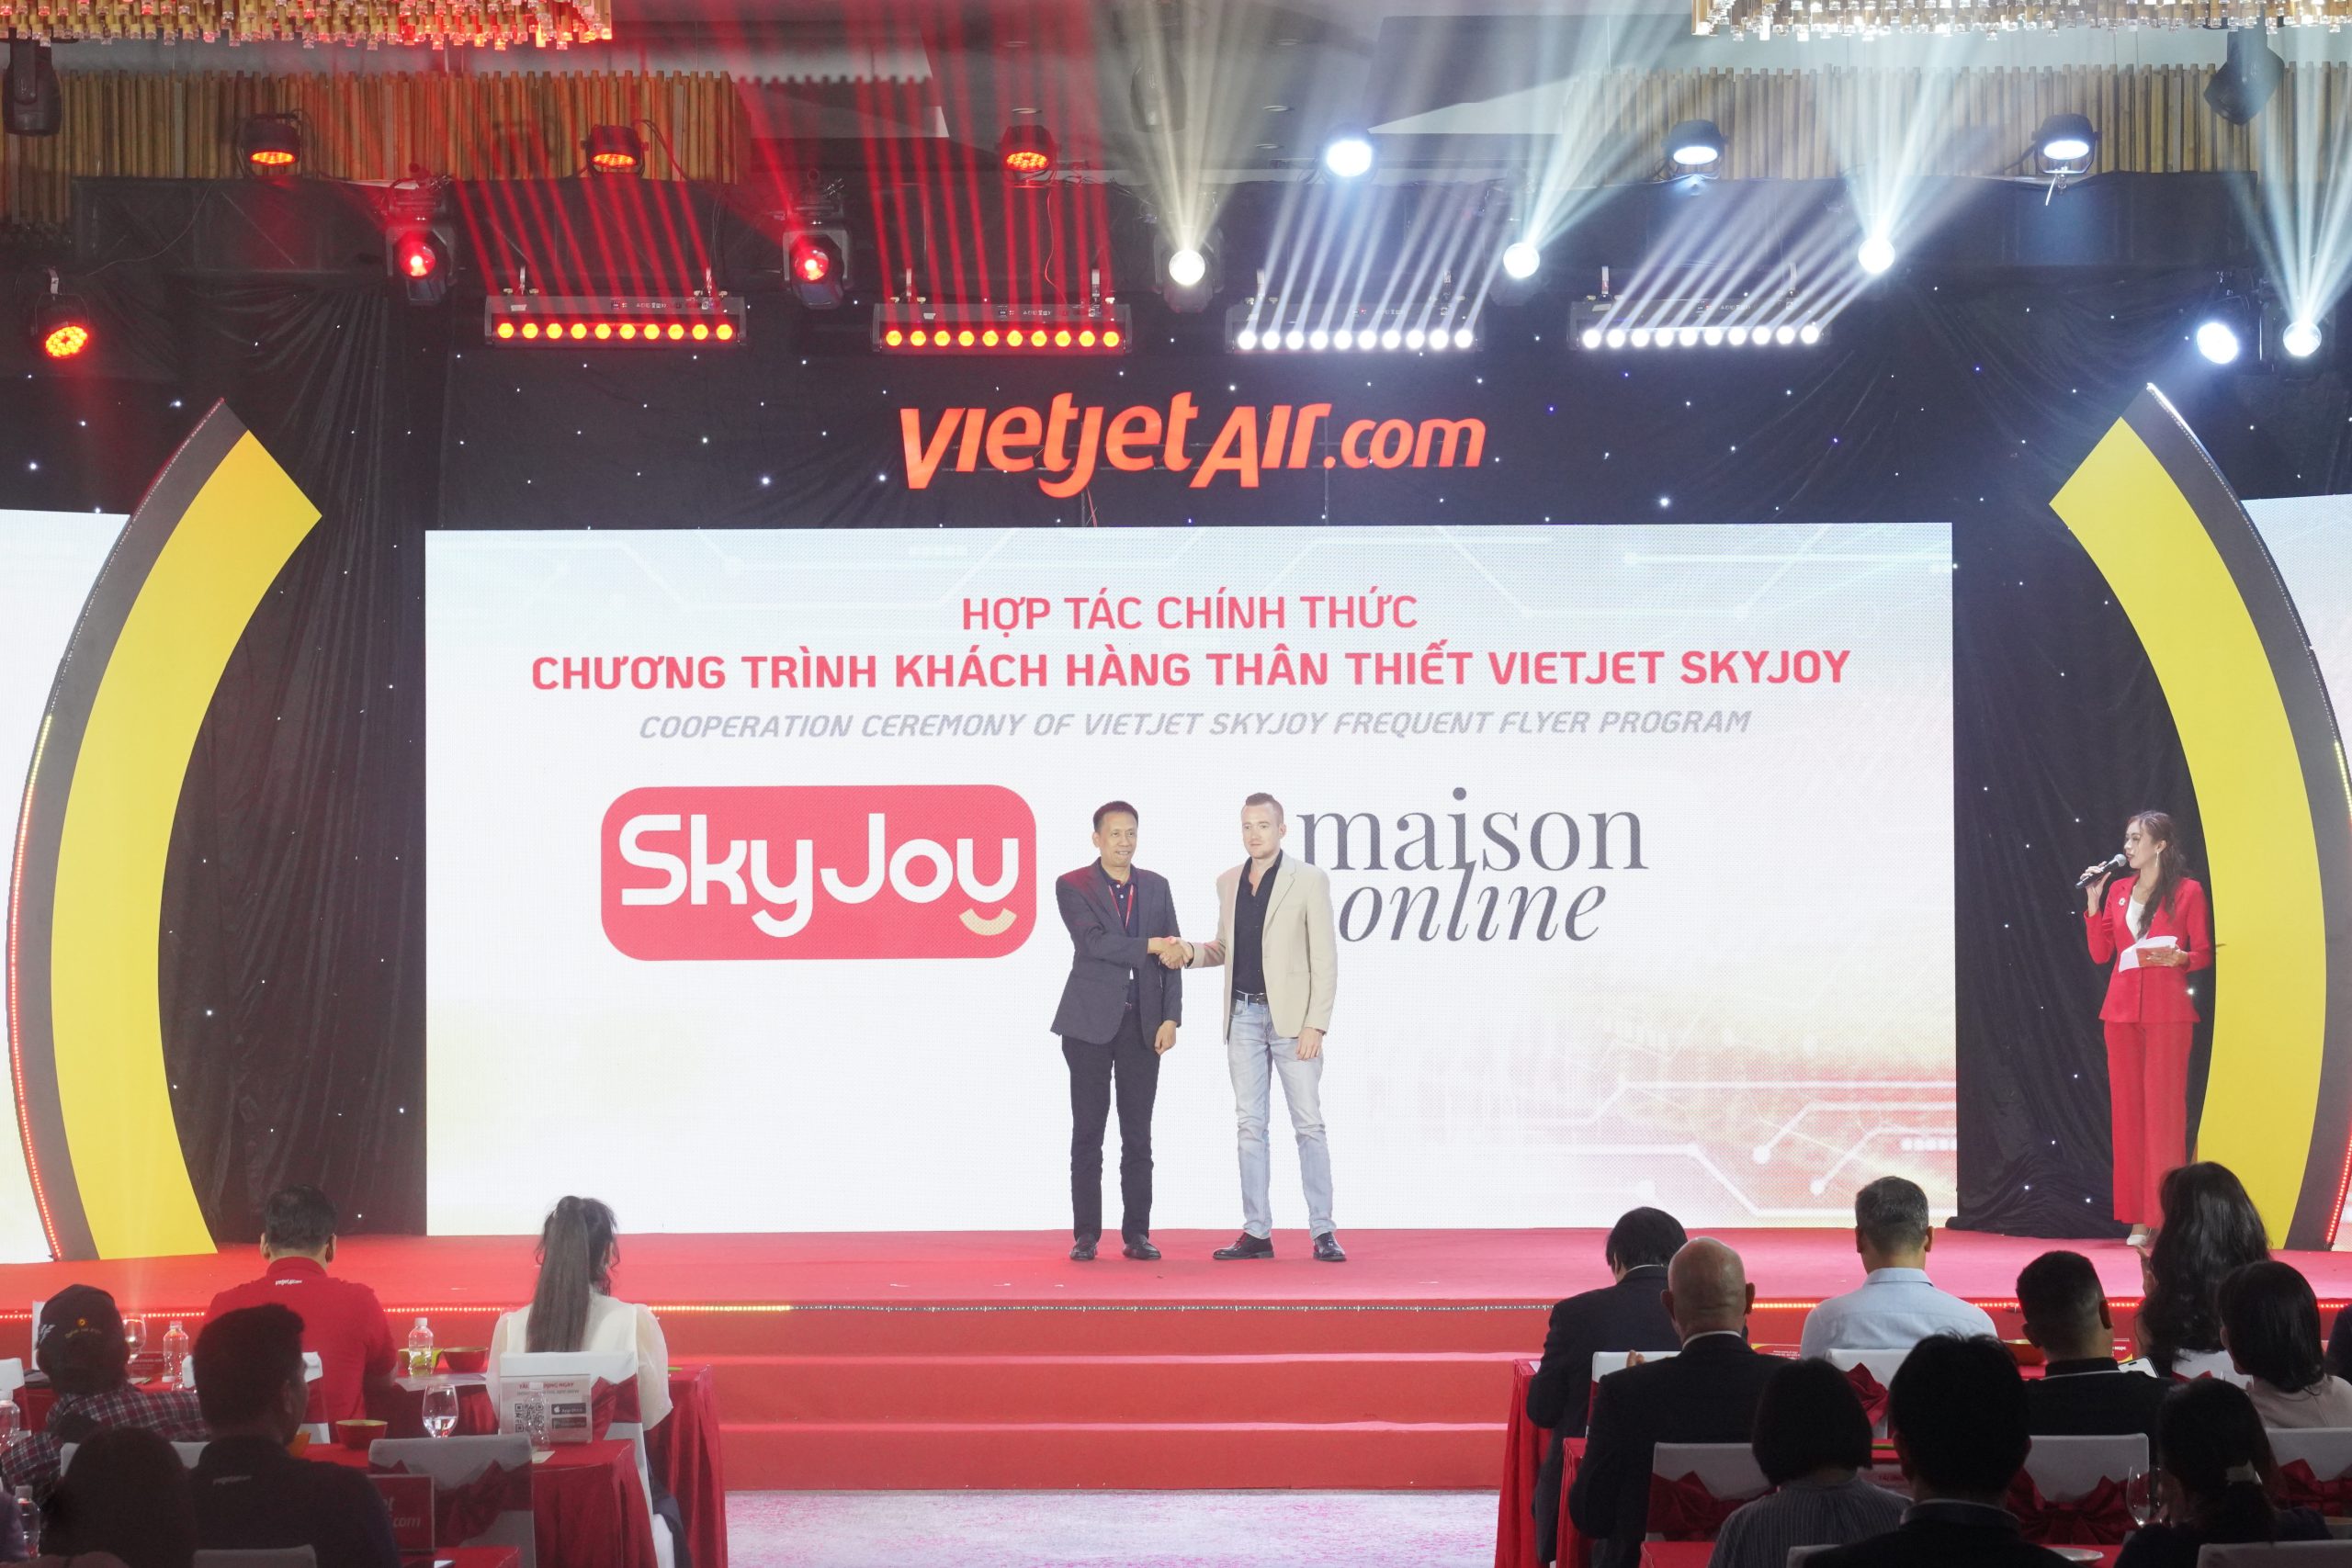 Tích Điểm Nhận Quà Cùng SkyJoy Do Vietjet Air Hợp Tác Cùng Maison Online